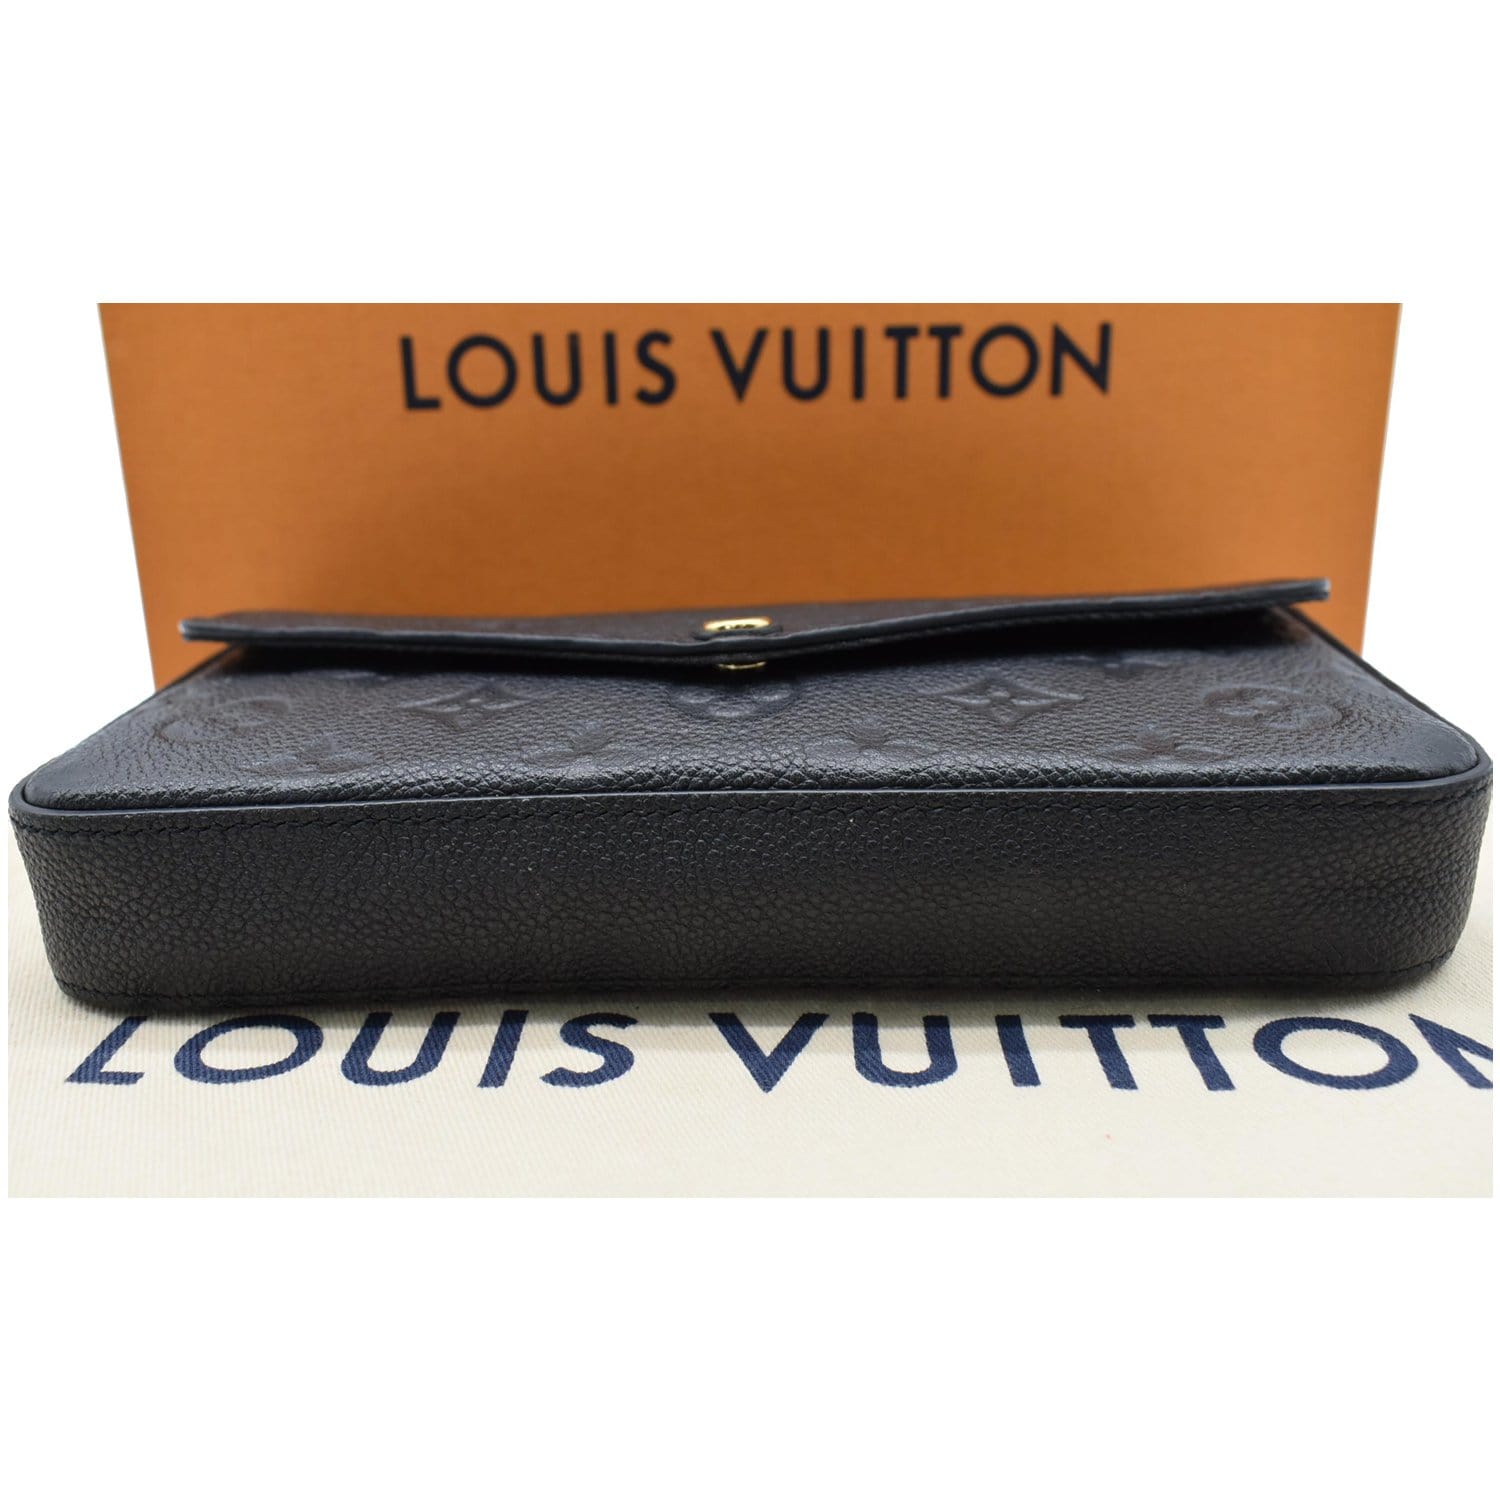 LOUIS VUITTON Empreinte Pochette Felicie Chain Wallet Black